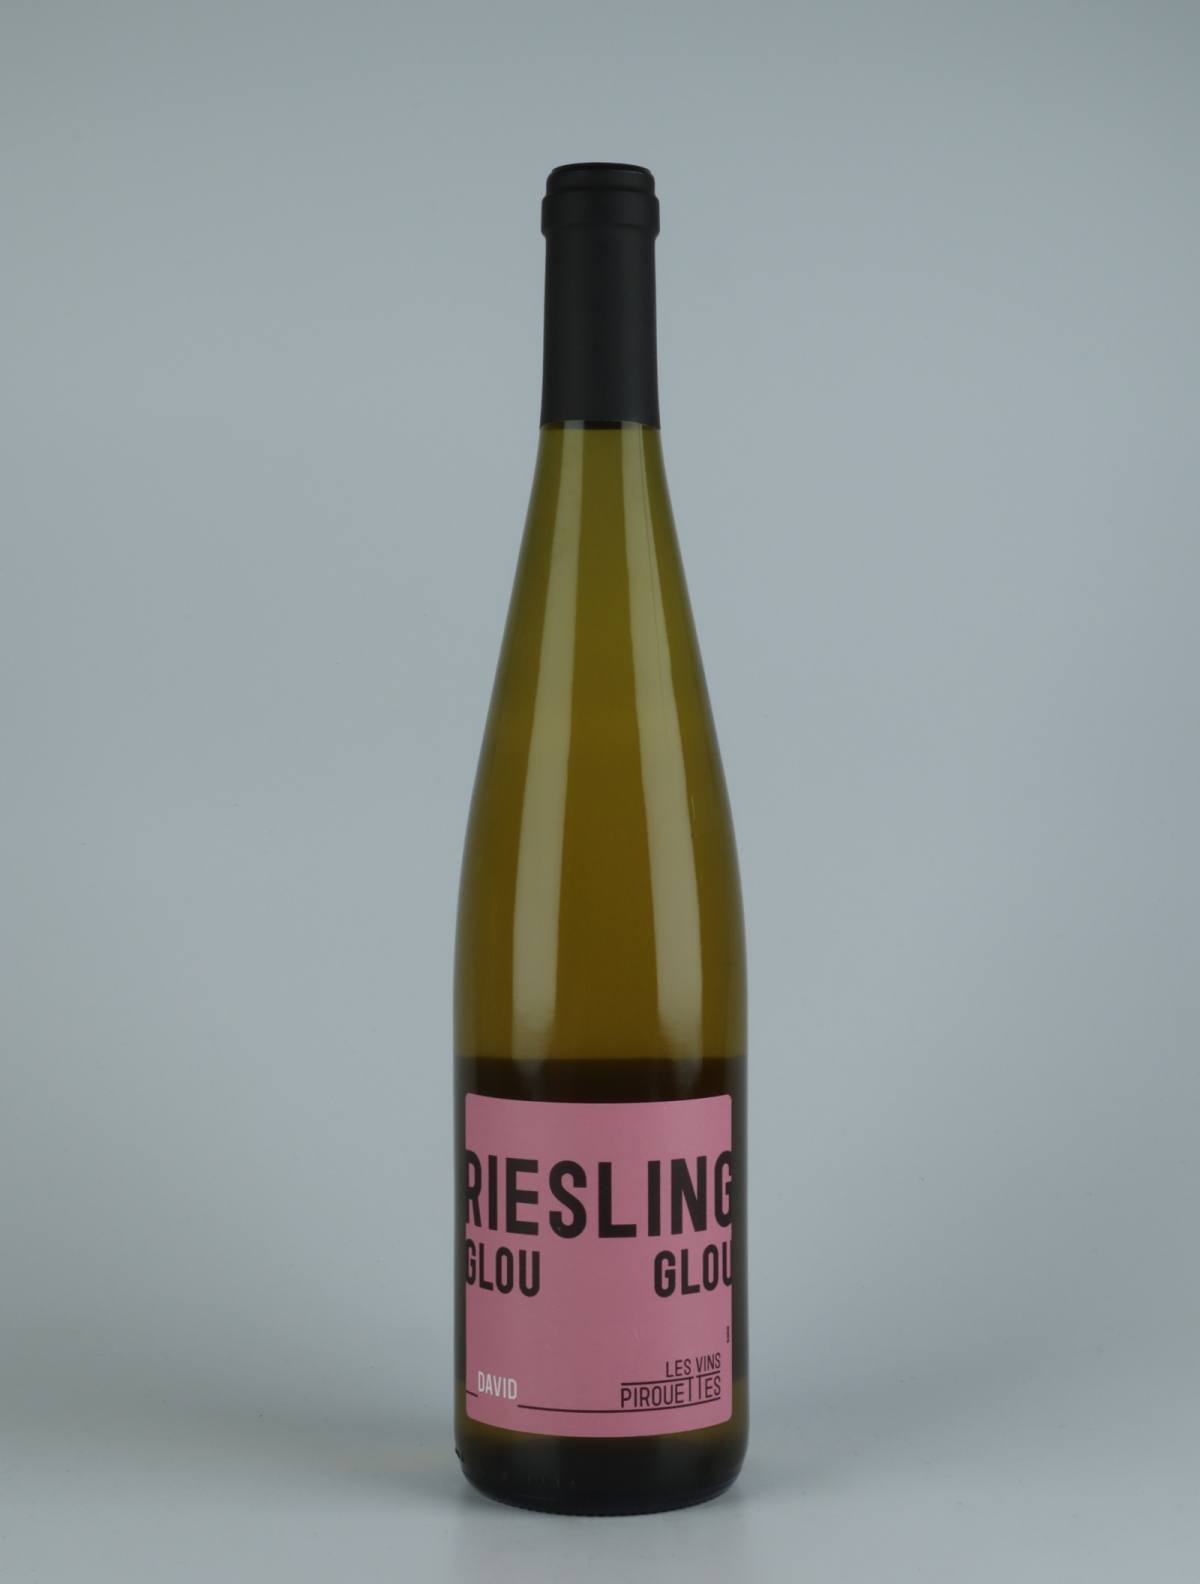 En flaske 2018 Riesling Glouglou de David Hvidvin fra Les Vins Pirouettes, Alsace i Frankrig